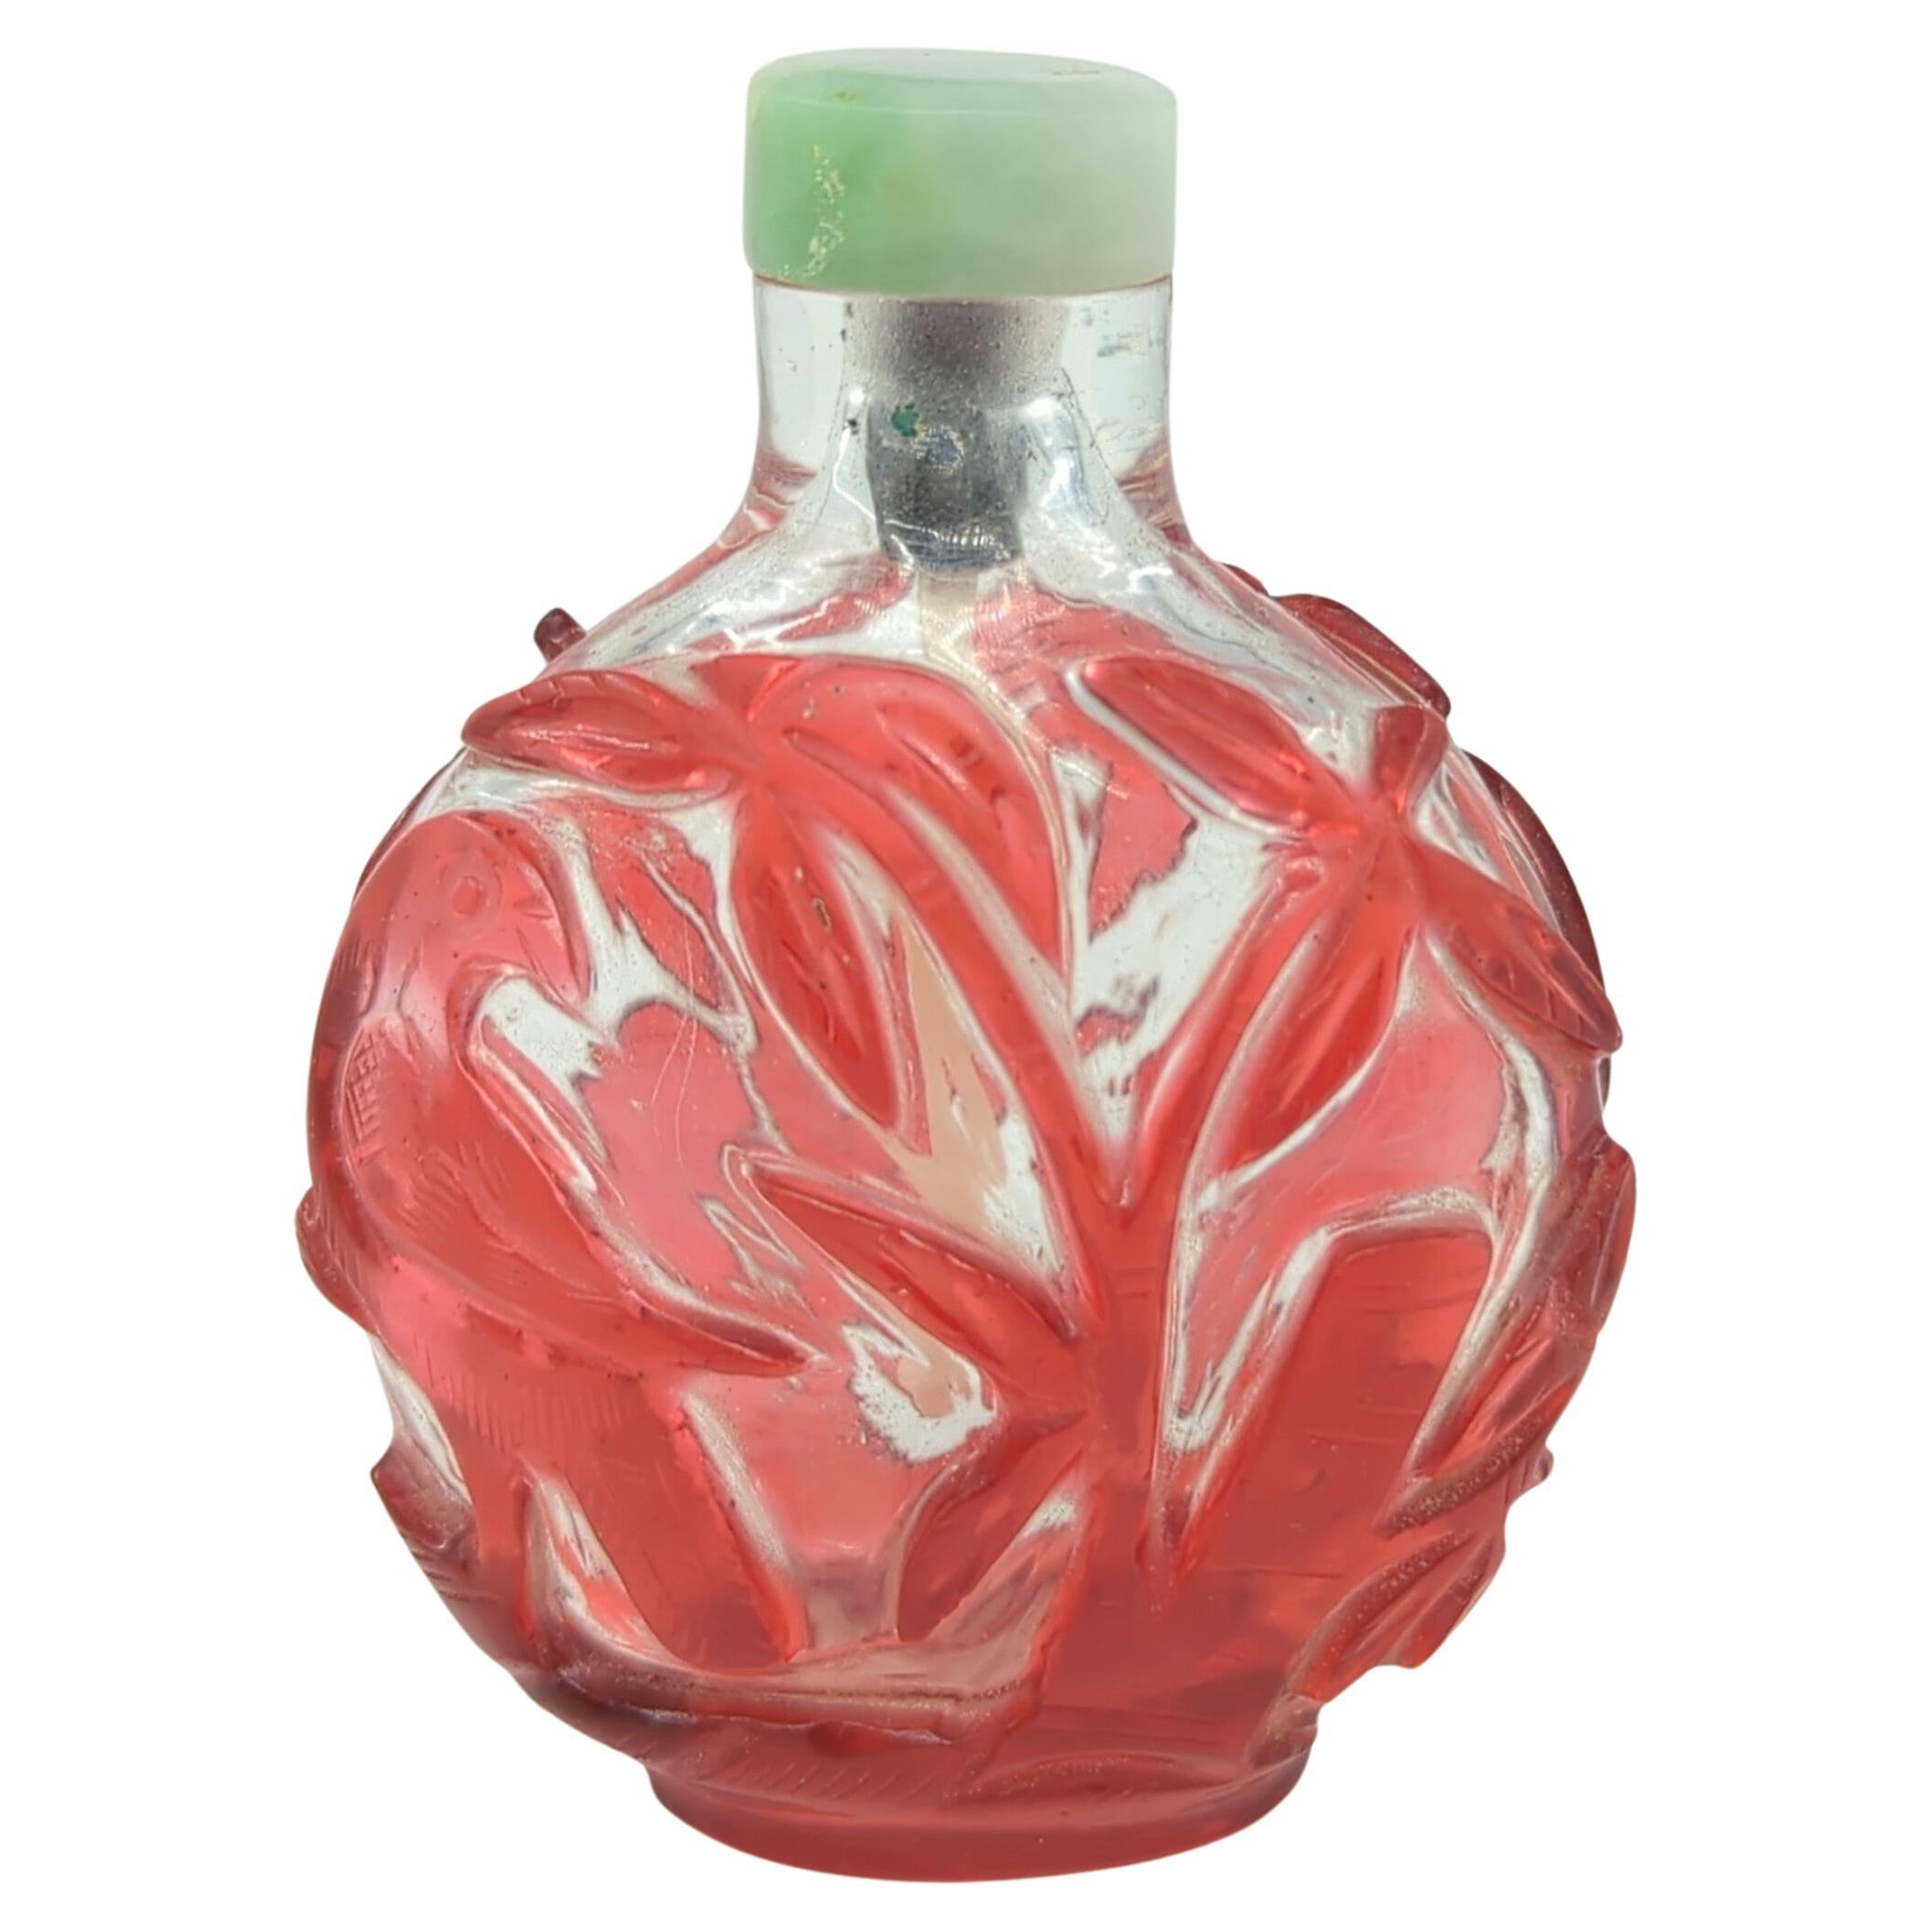 Bouteille de bouteille de parfum chinoise ancienne en jadéite rouge rubis recouverte de verre, vers 1900